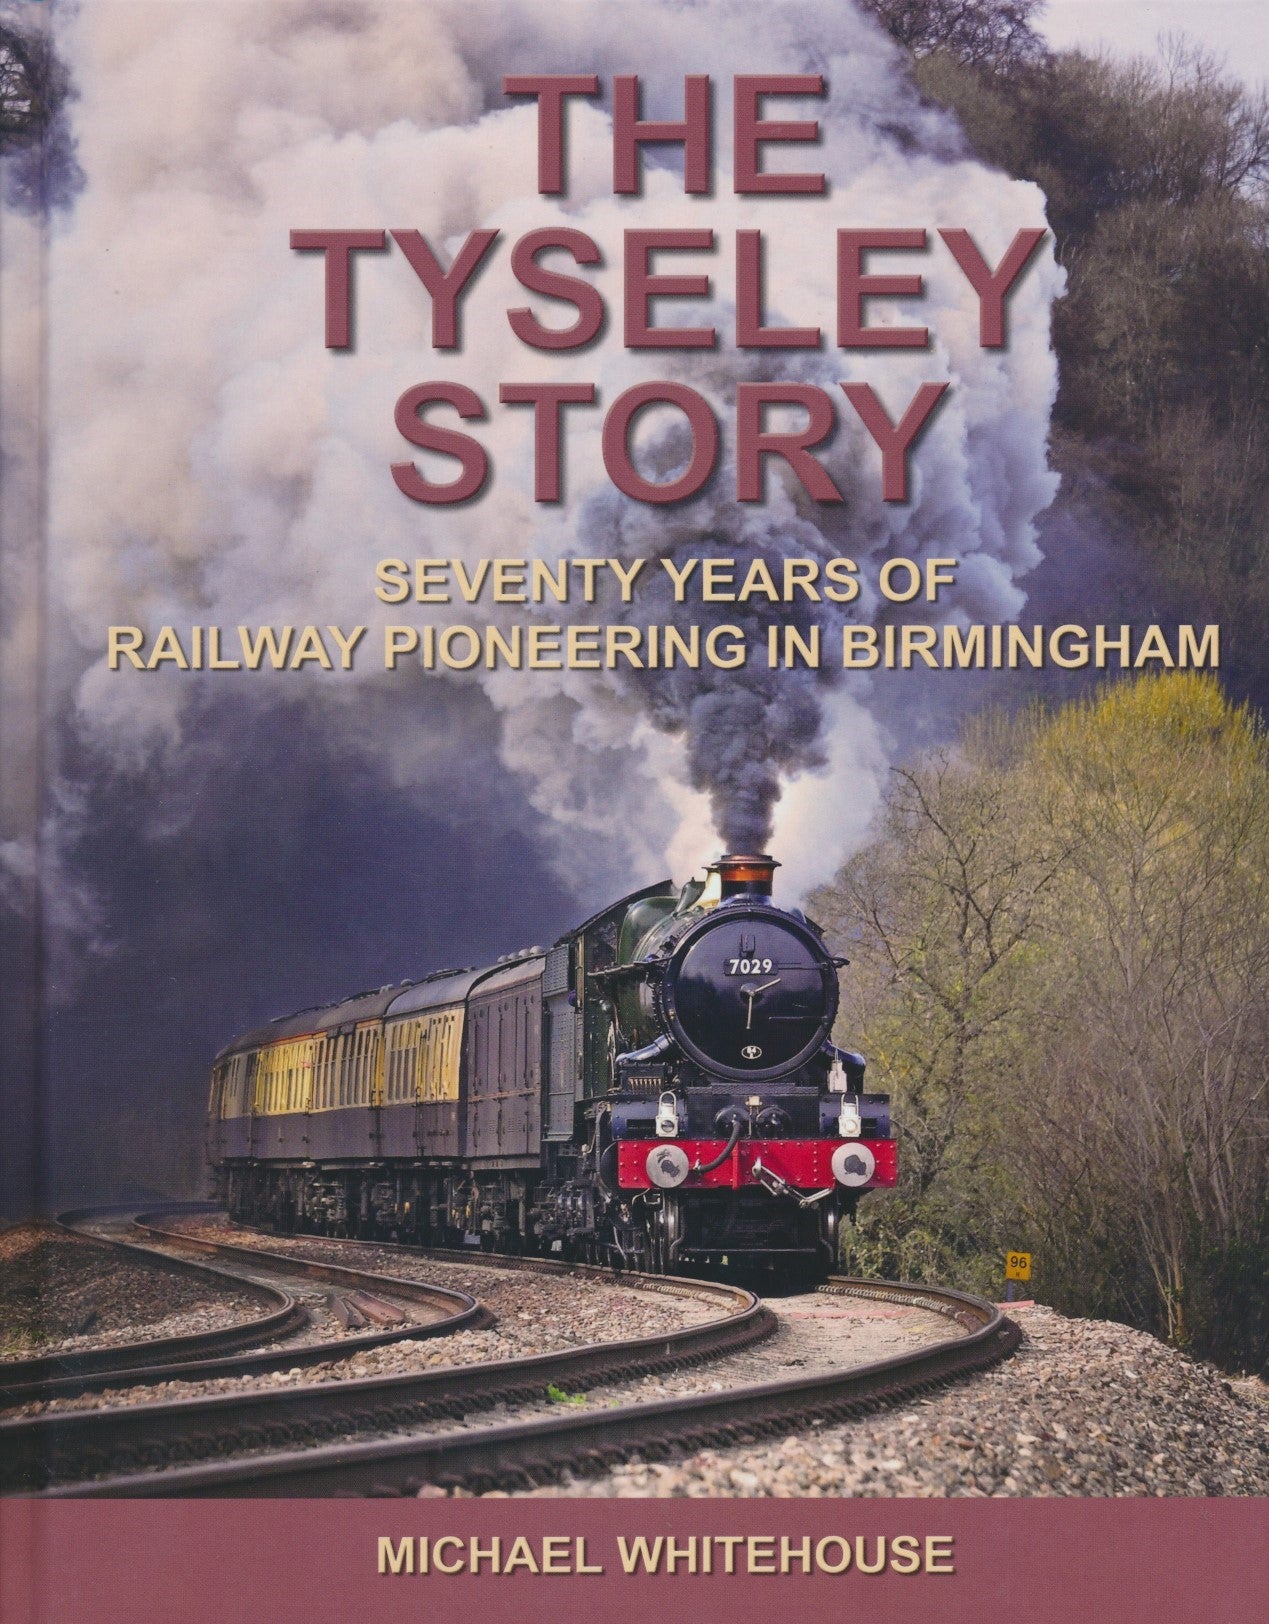 The Tyseley Story - Seventy Years of Railway Pioneering In Birmingham